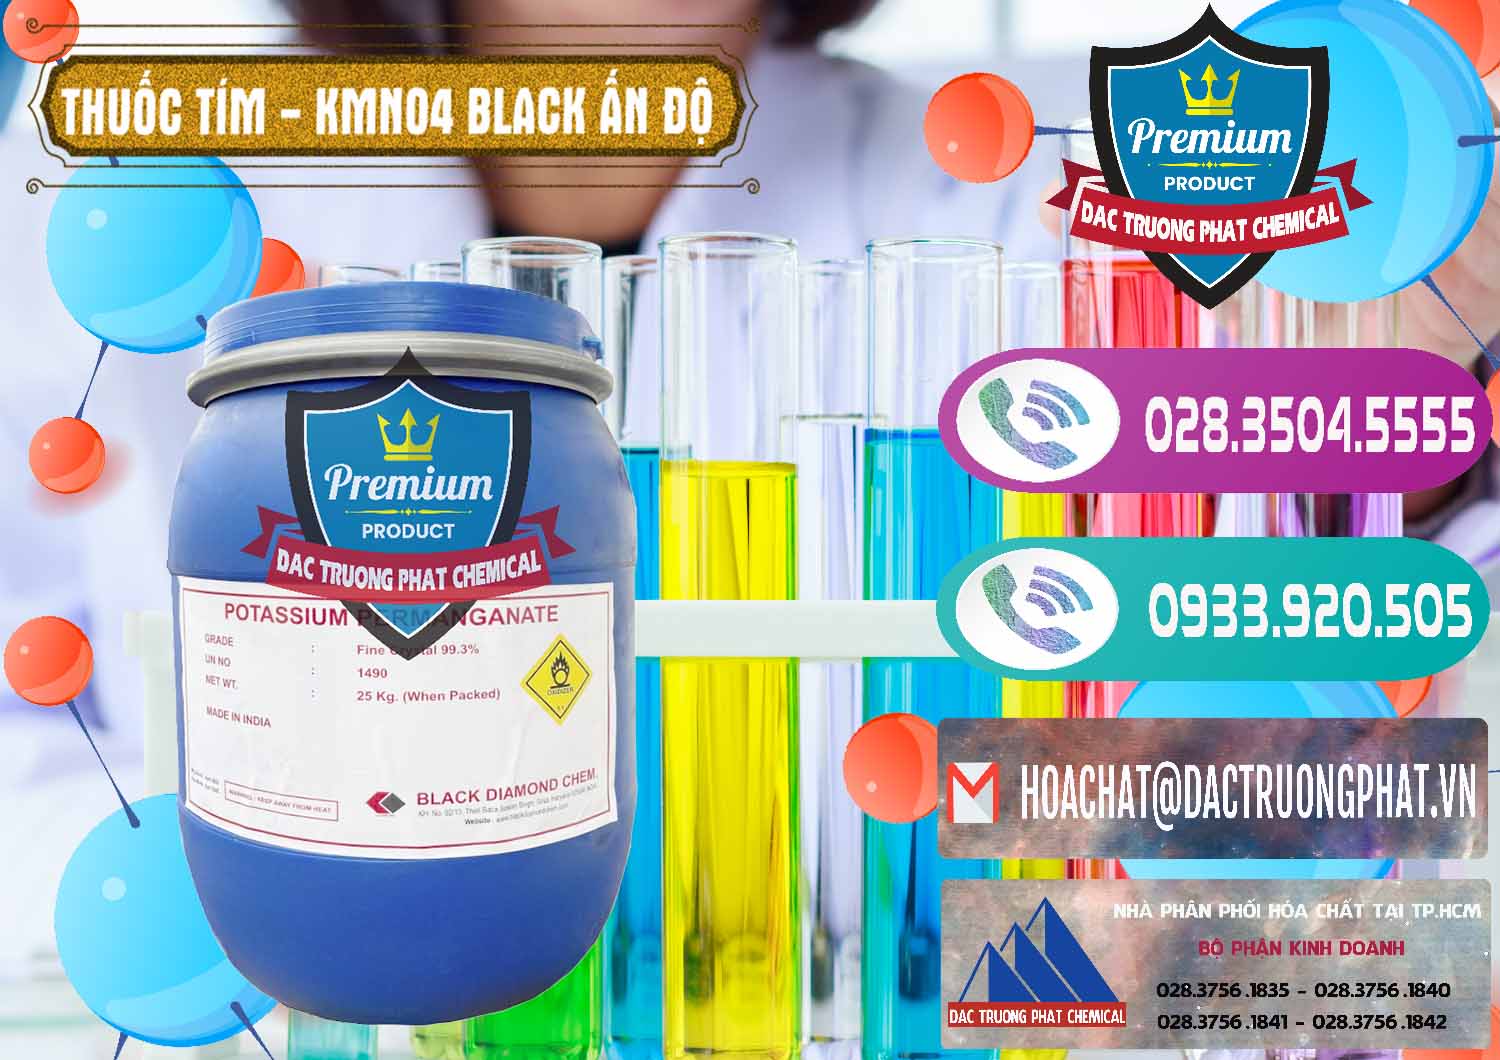 Cty cung cấp ( bán ) Thuốc Tím - KMNO4 Black Diamond Ấn Độ India - 0414 - Công ty cung cấp & phân phối hóa chất tại TP.HCM - hoachatxulynuoc.com